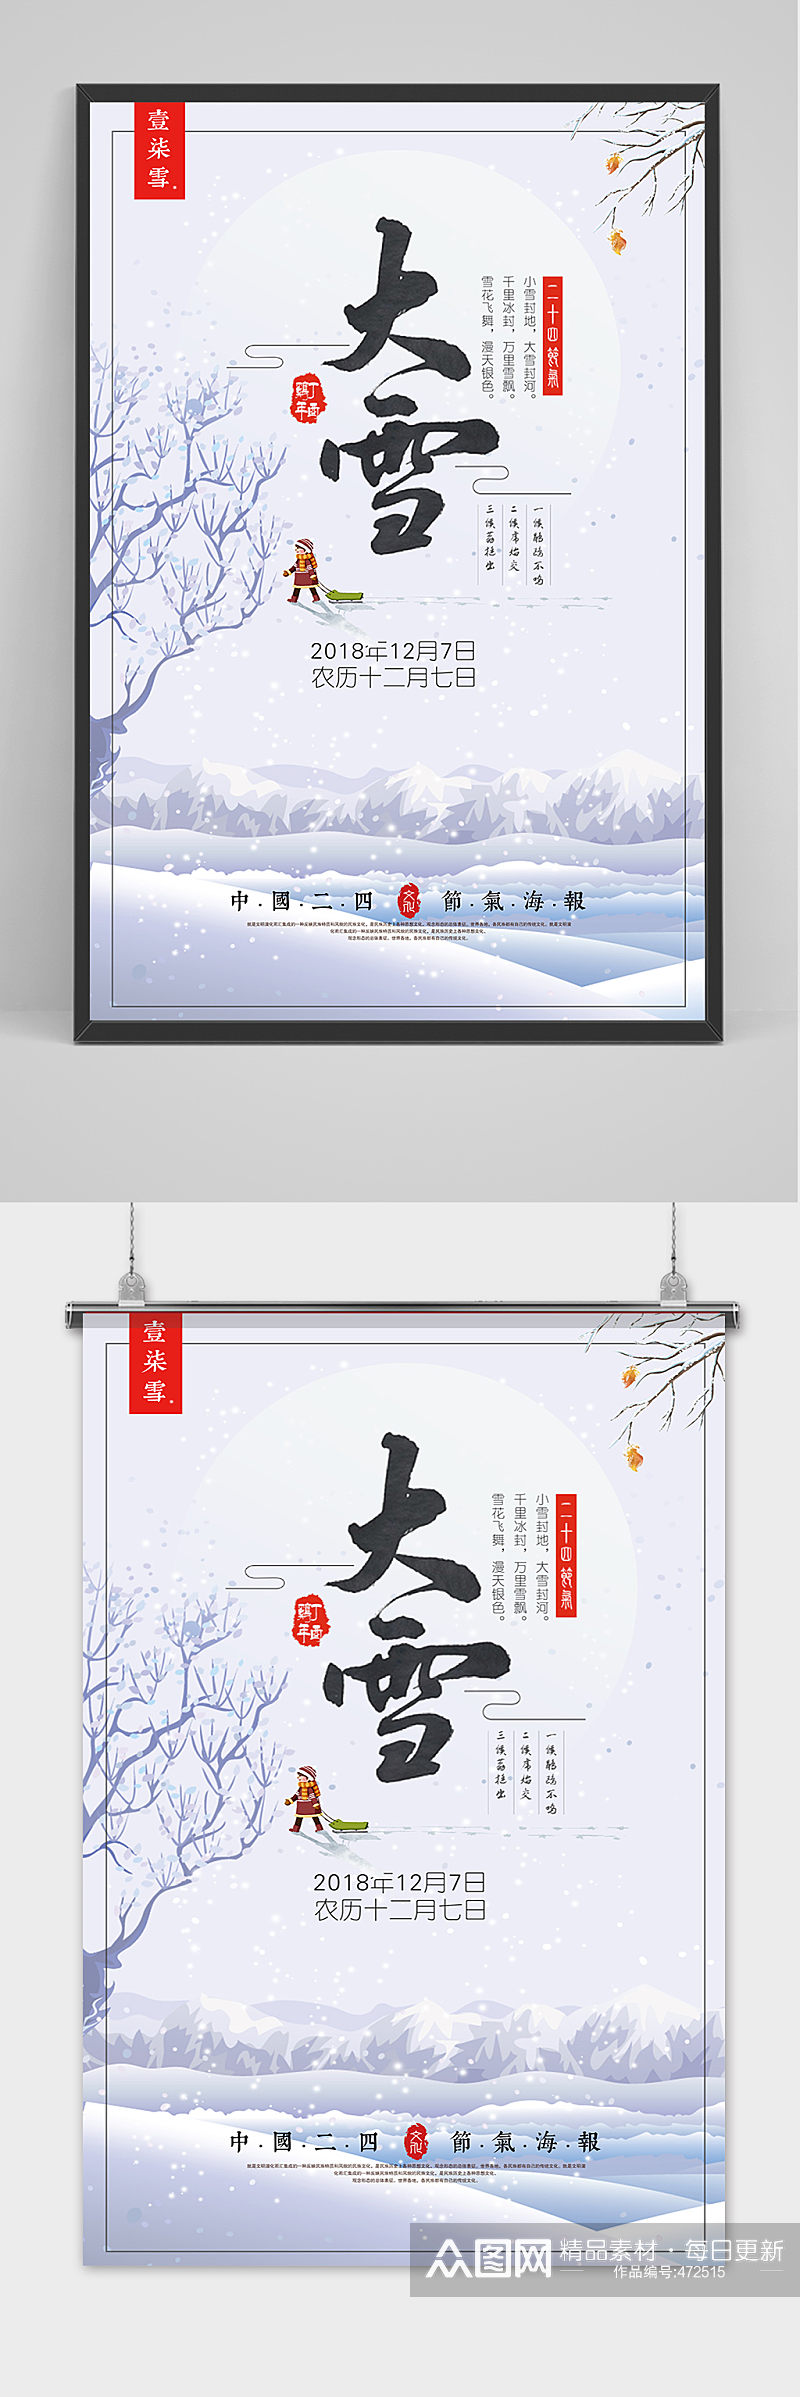 大雪24传统节气宣传海报素材